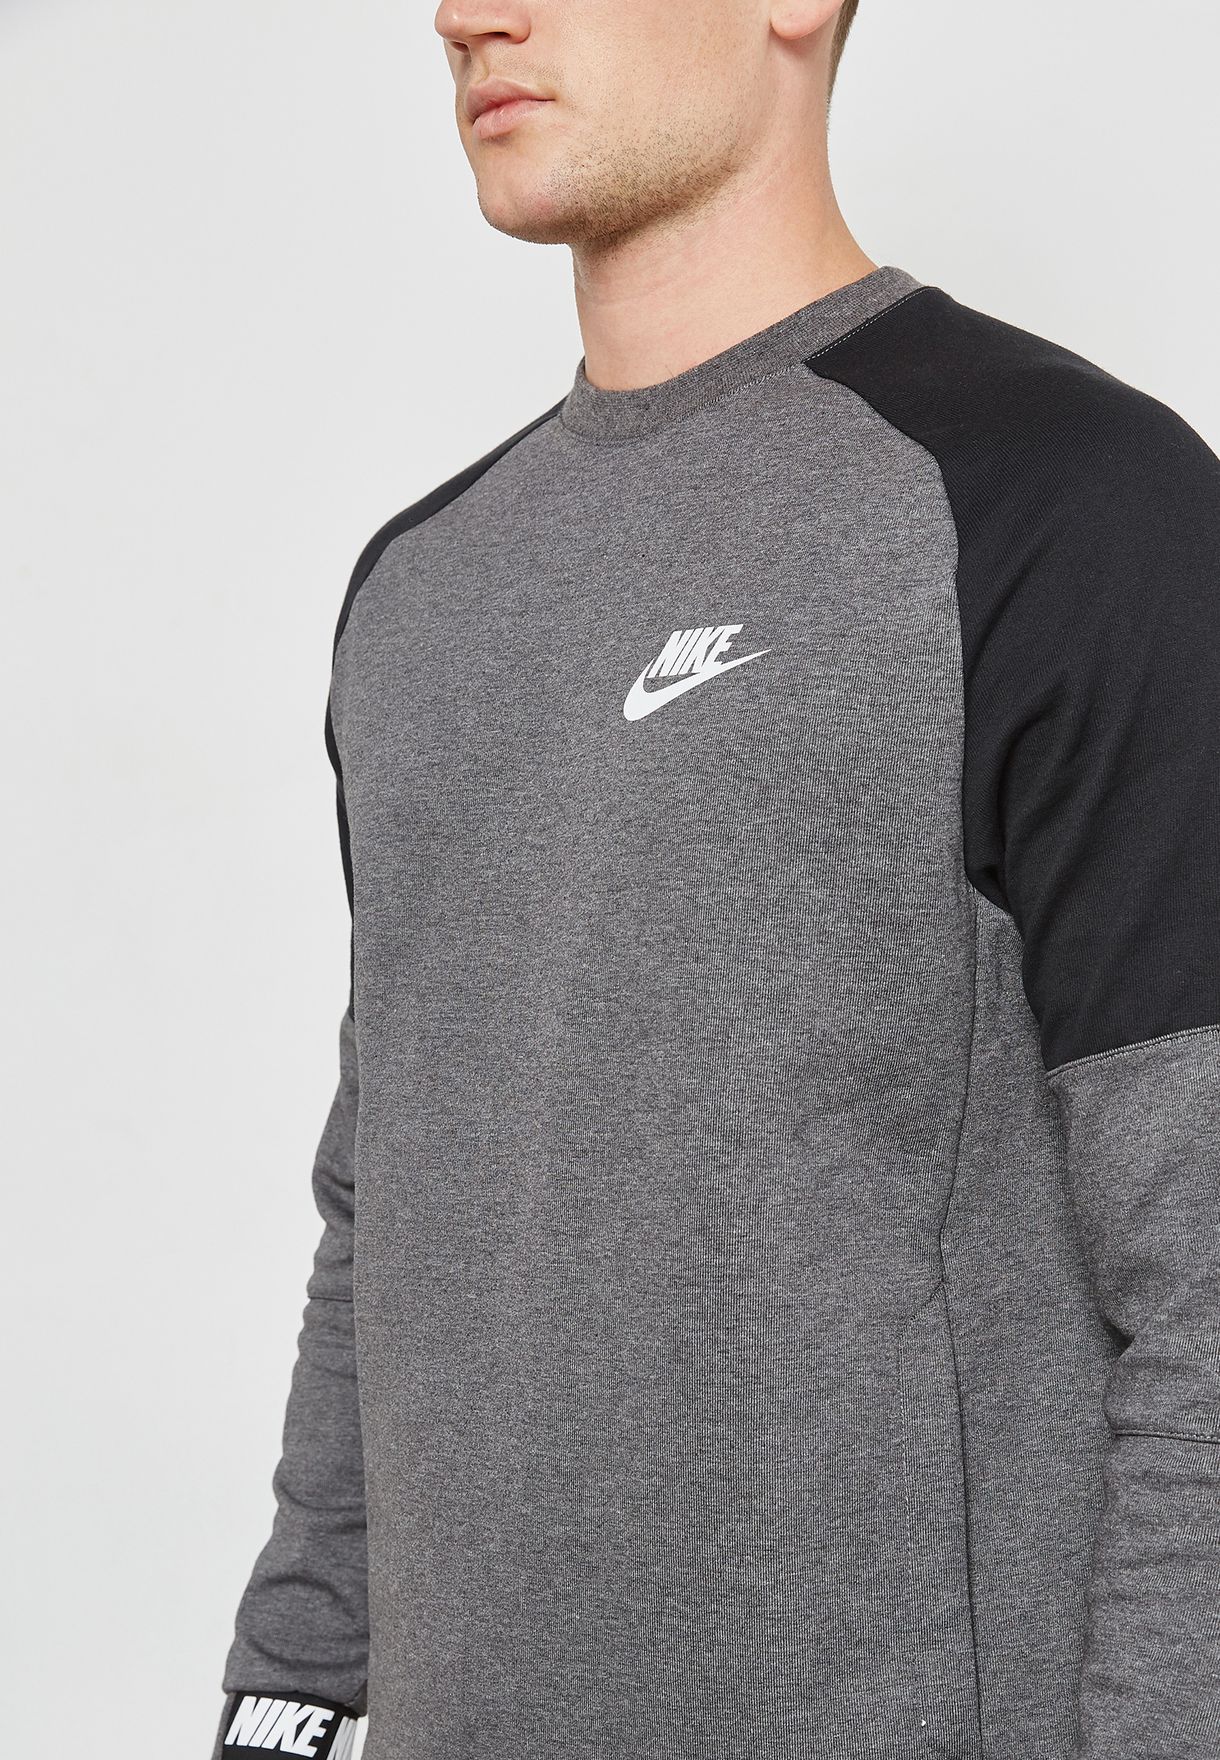 Buy Nike Grey Av15 Fleece Sweatshirt For Men In Mena Worldwide 861744 073 [ 1760 x 1220 Pixel ]